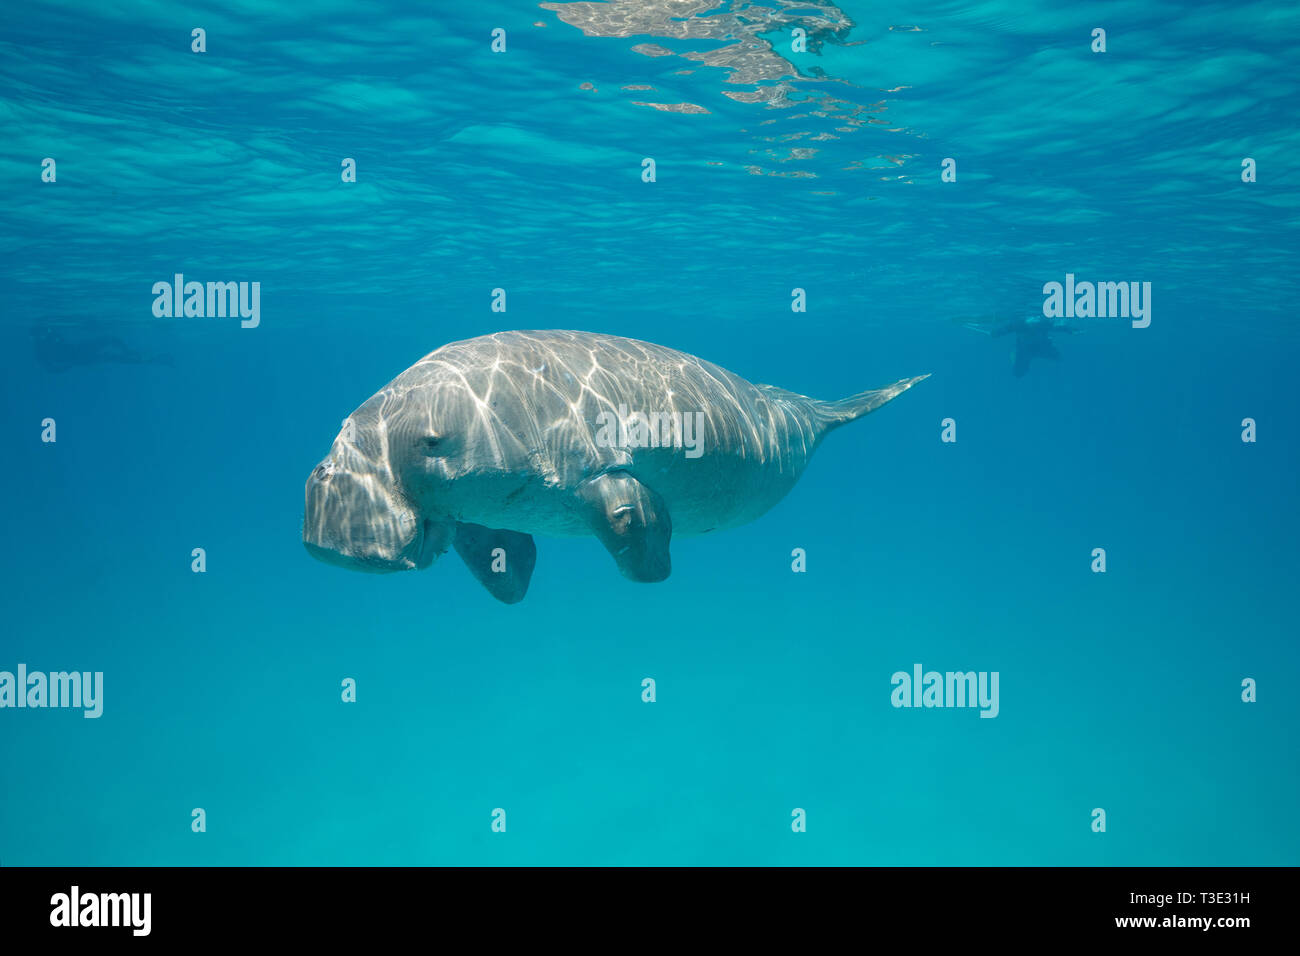 Männliche dugong oder Seekuh, Dugong dugon, kritisch gefährdeten Arten, Schnorchler im Hintergrund, Calauit Island, calamian Inseln, Palawan, Philippinen Stockfoto